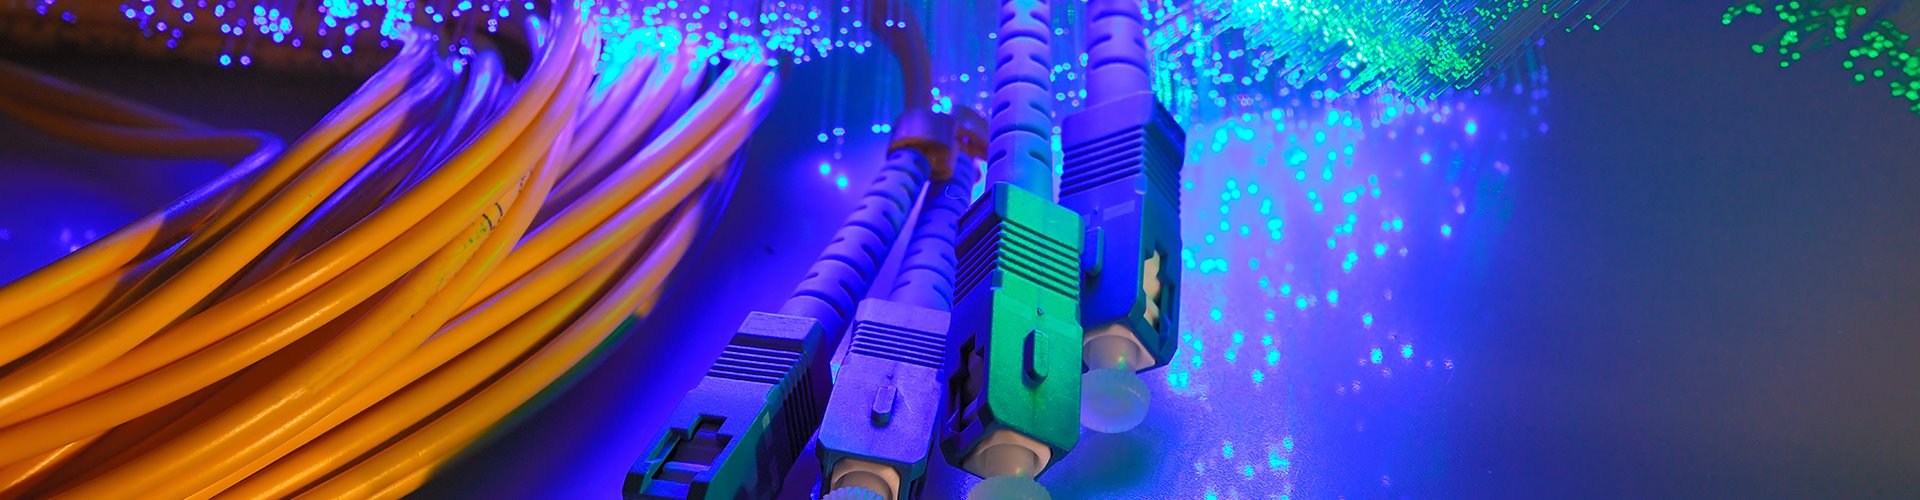 Cabling and fibre optics